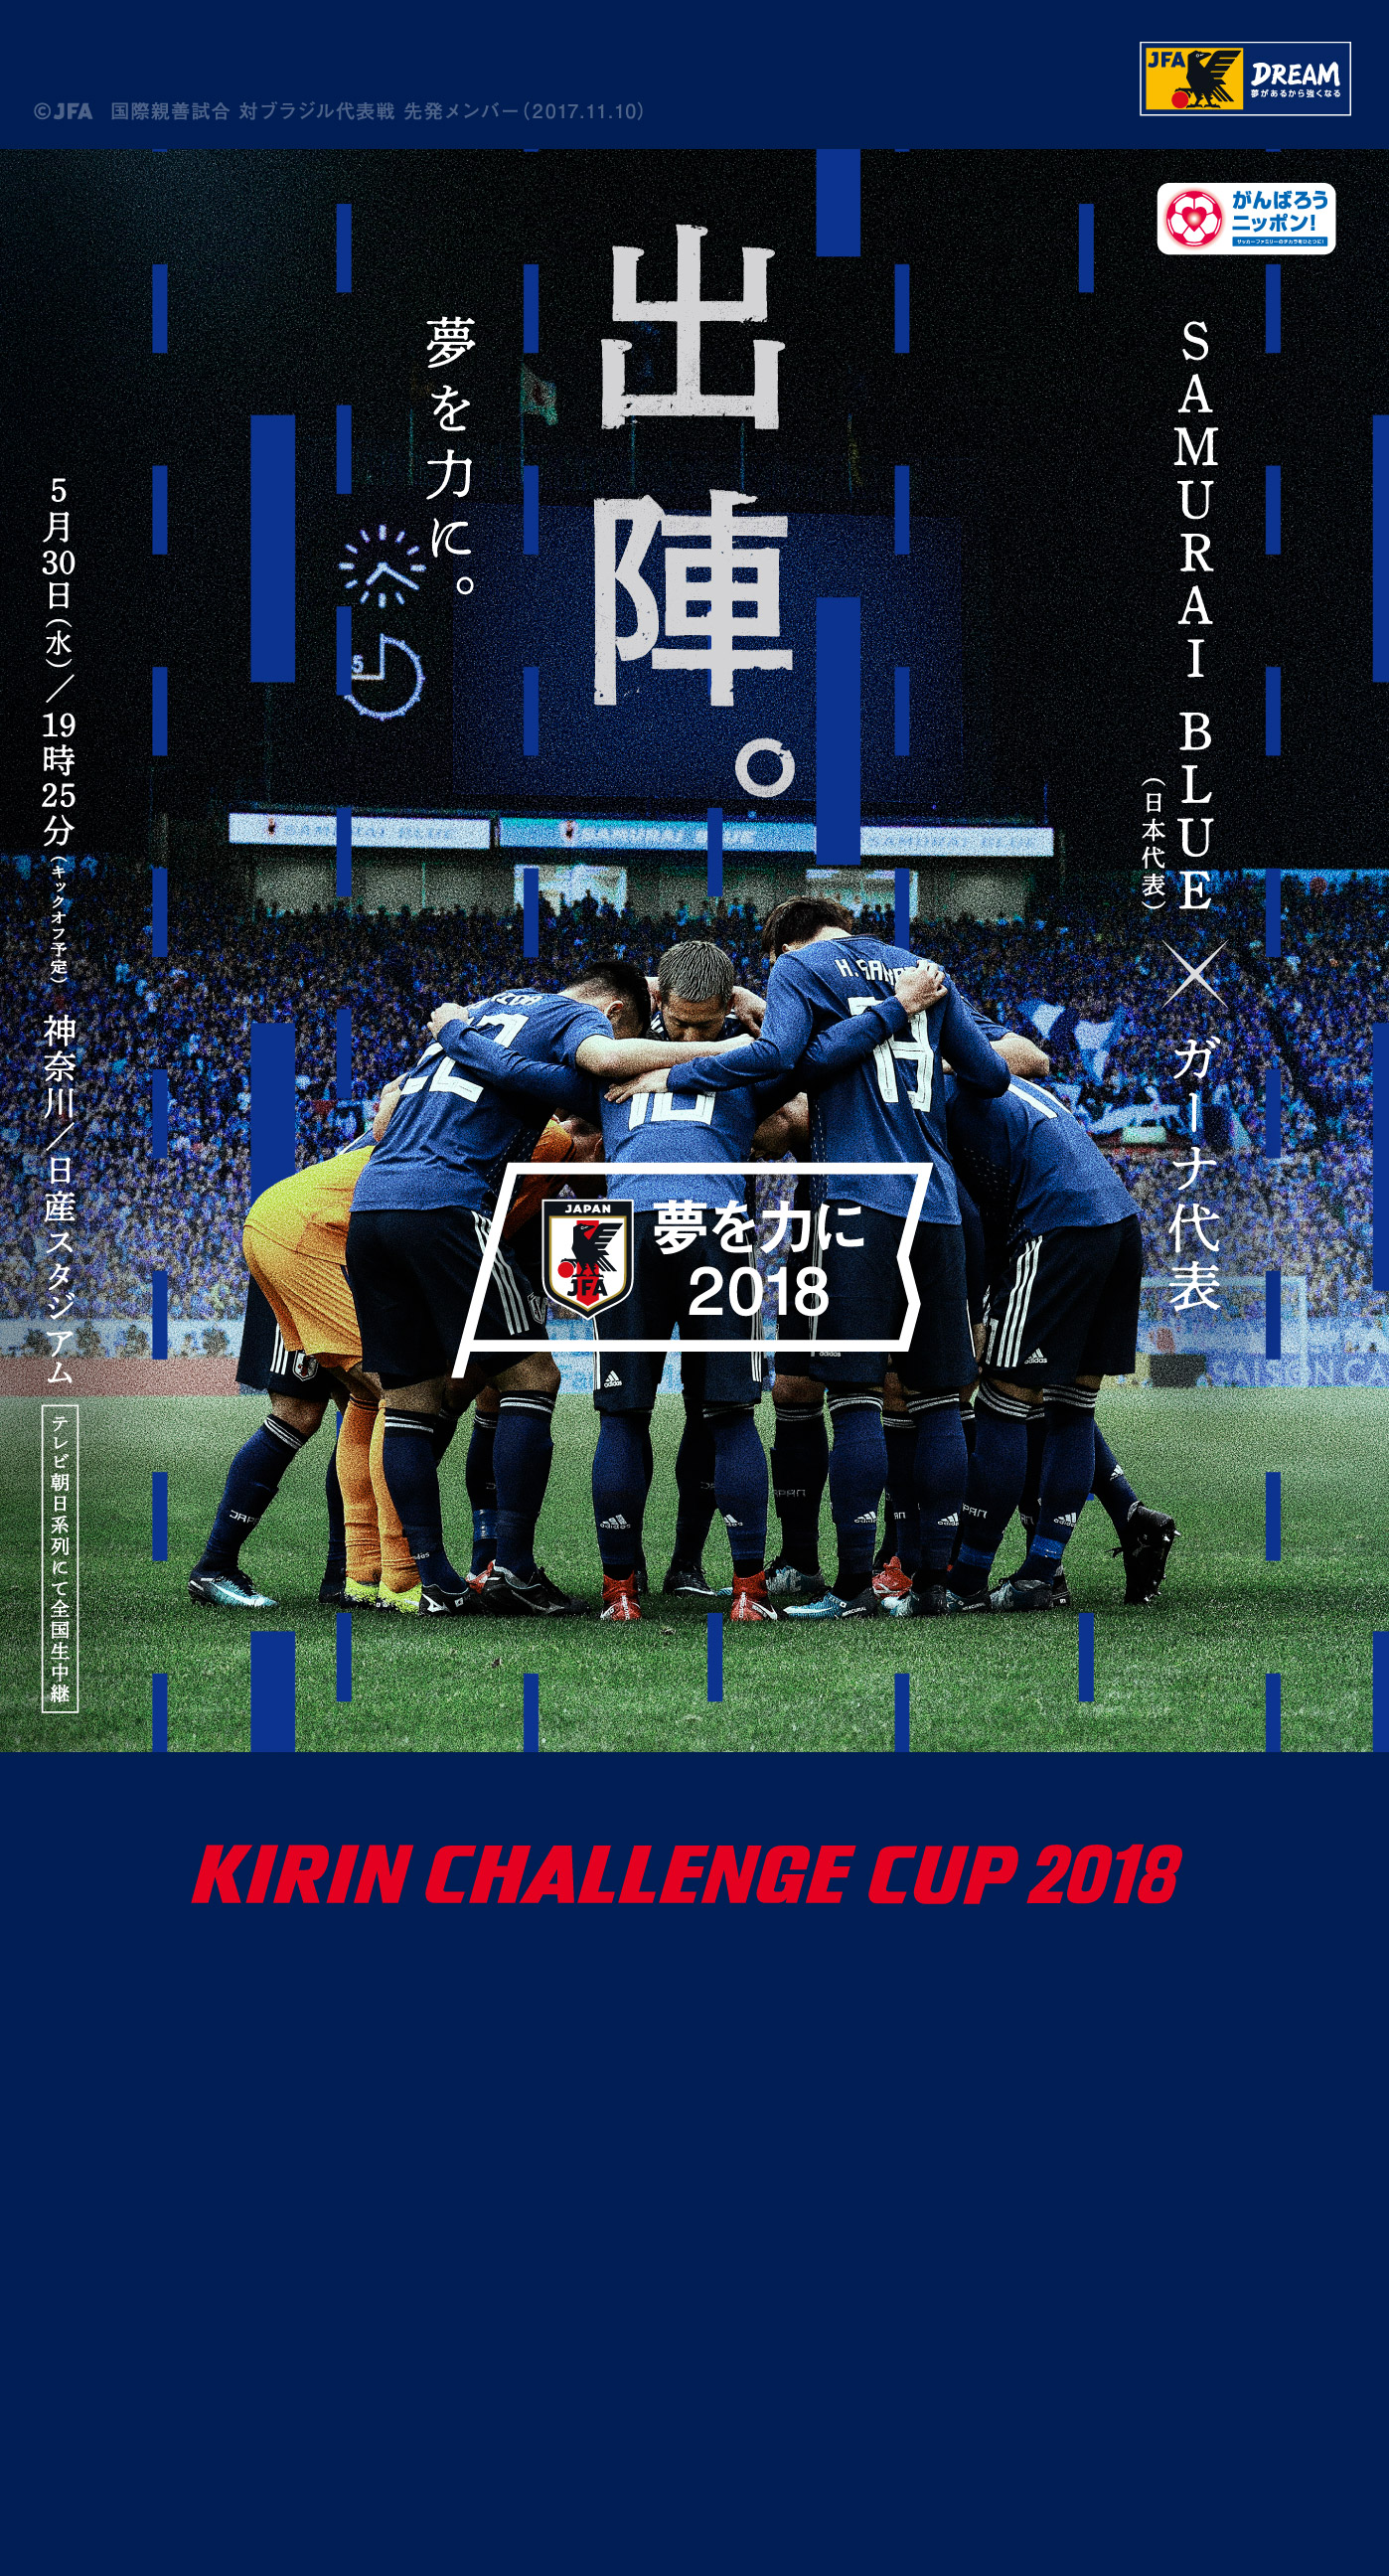 壁紙 ポスターダウンロード キリンチャレンジカップ2018 5 30 Samurai Blue 日本代表 Jfa 日本サッカー協会